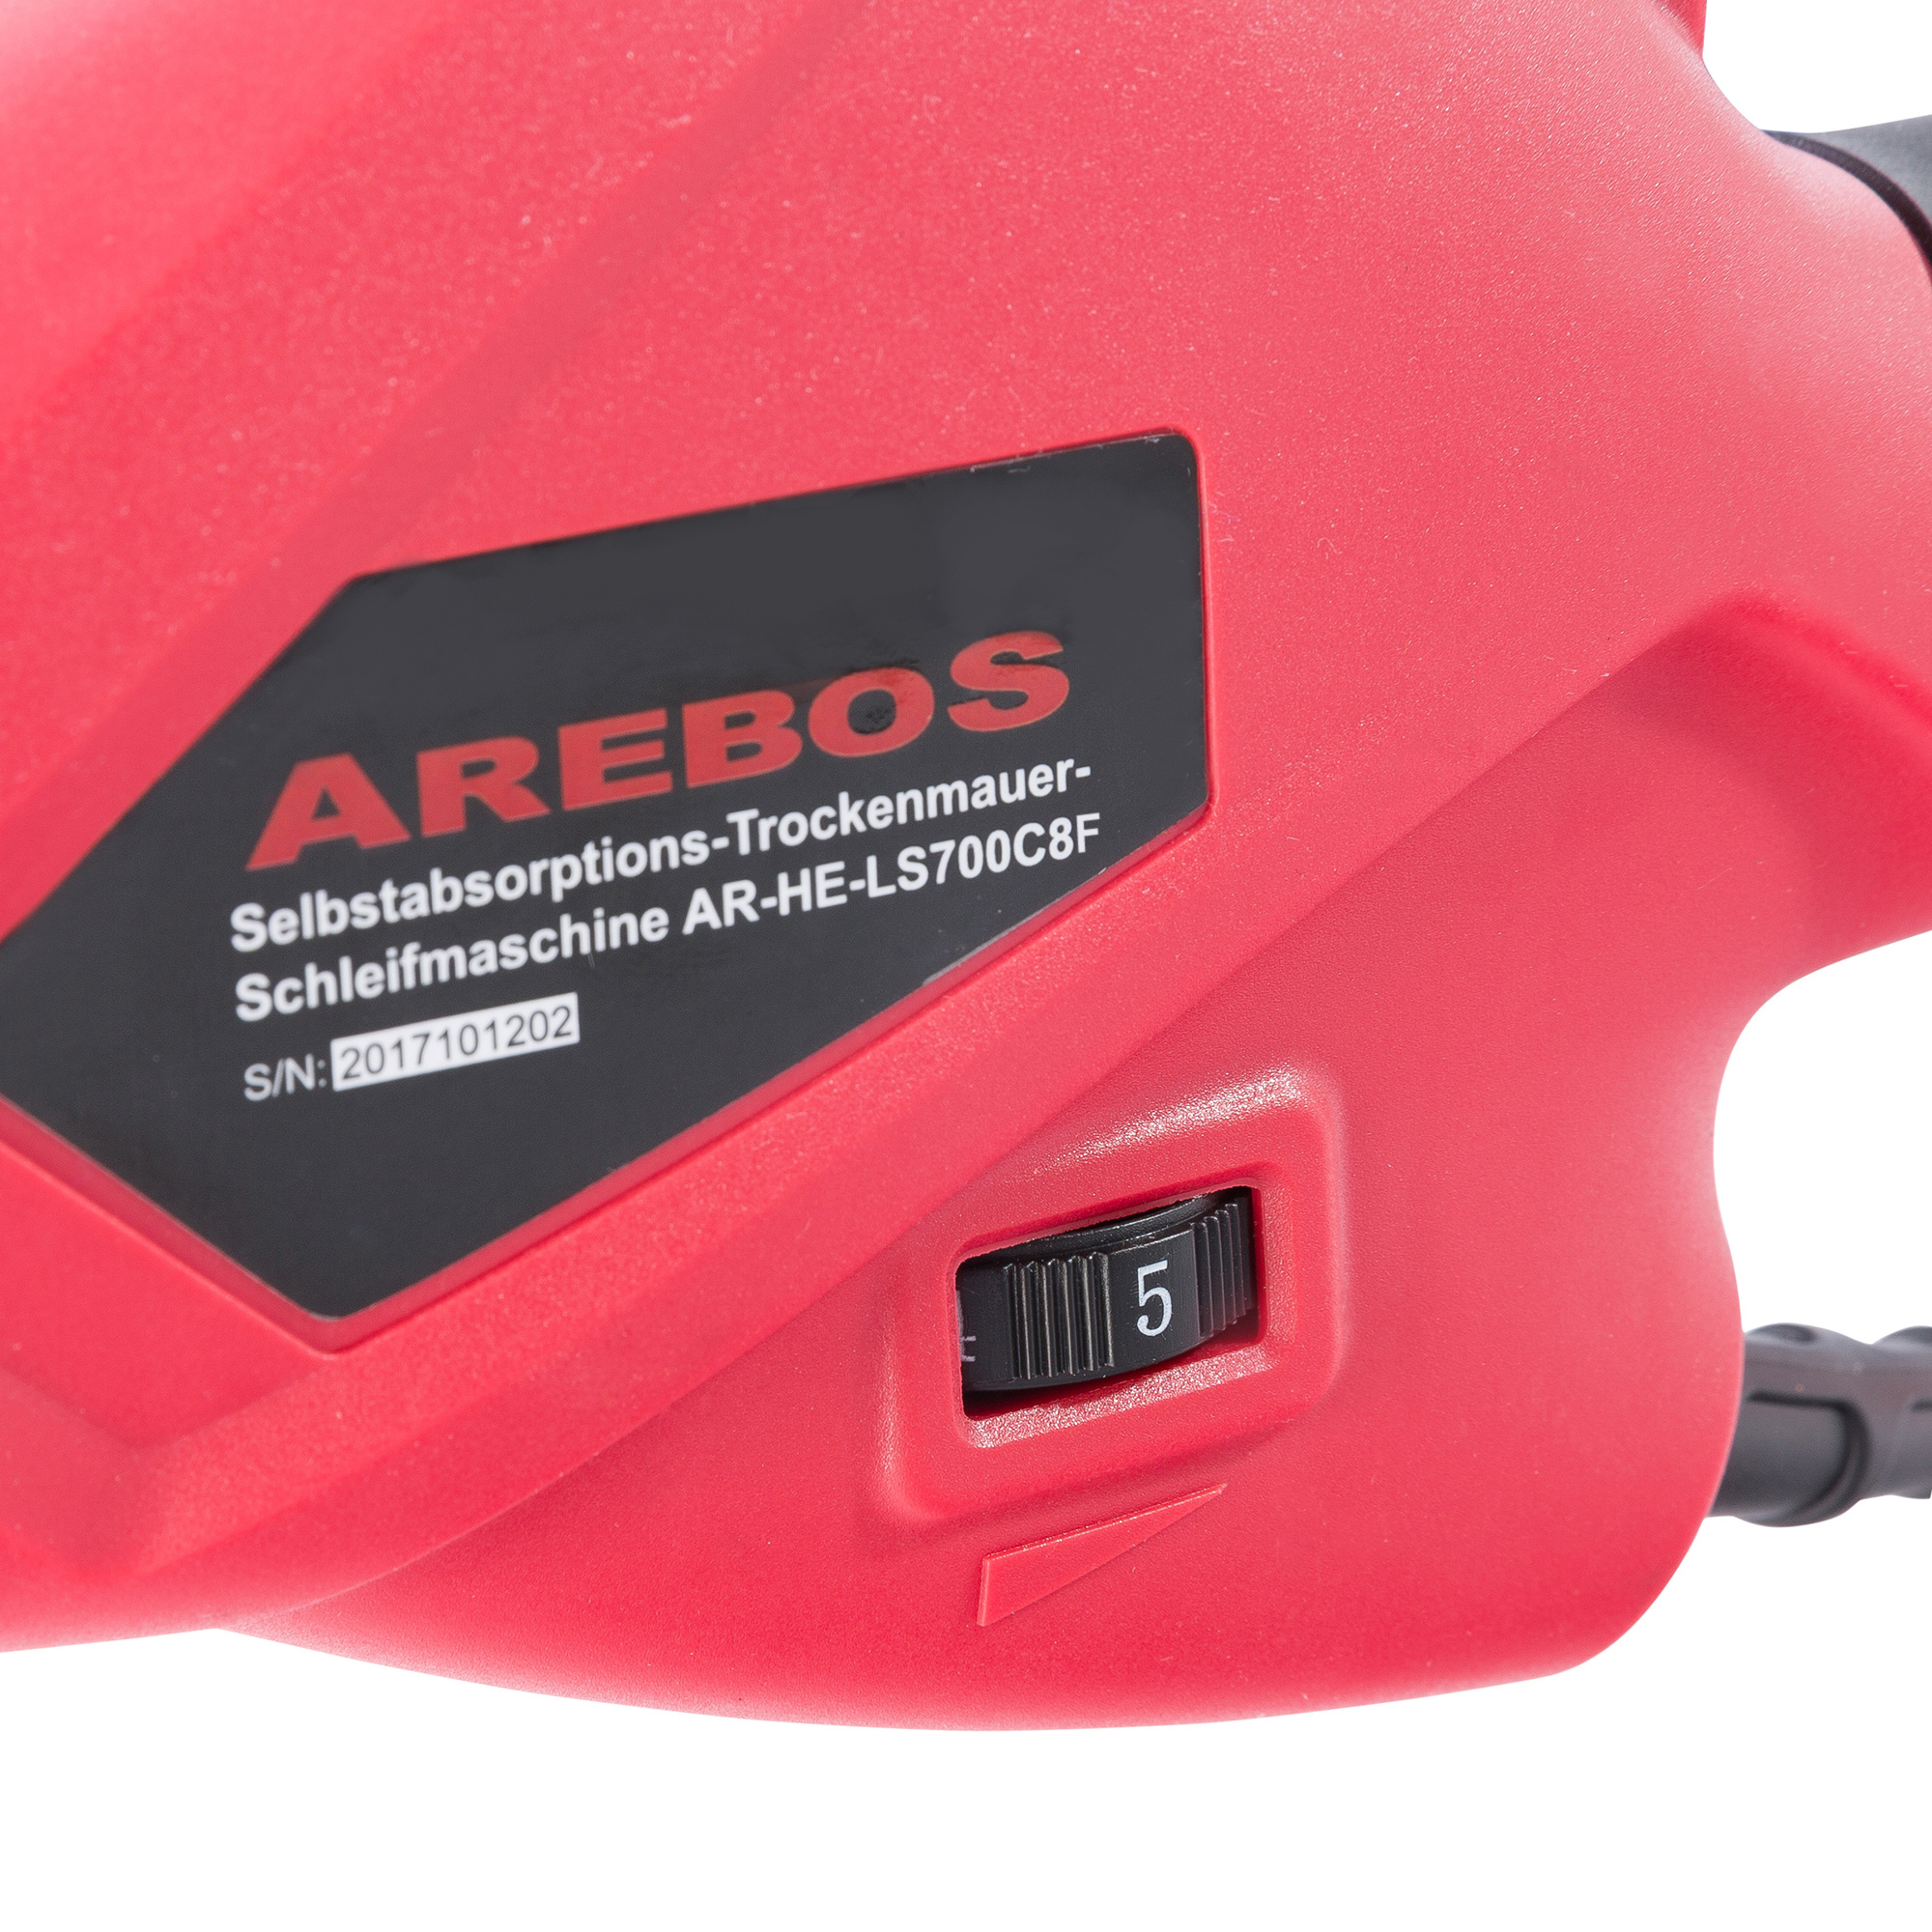 AREBOS Standard Absaugsystem Langhalsschleifer Teleskopstange Drehzahlregelung